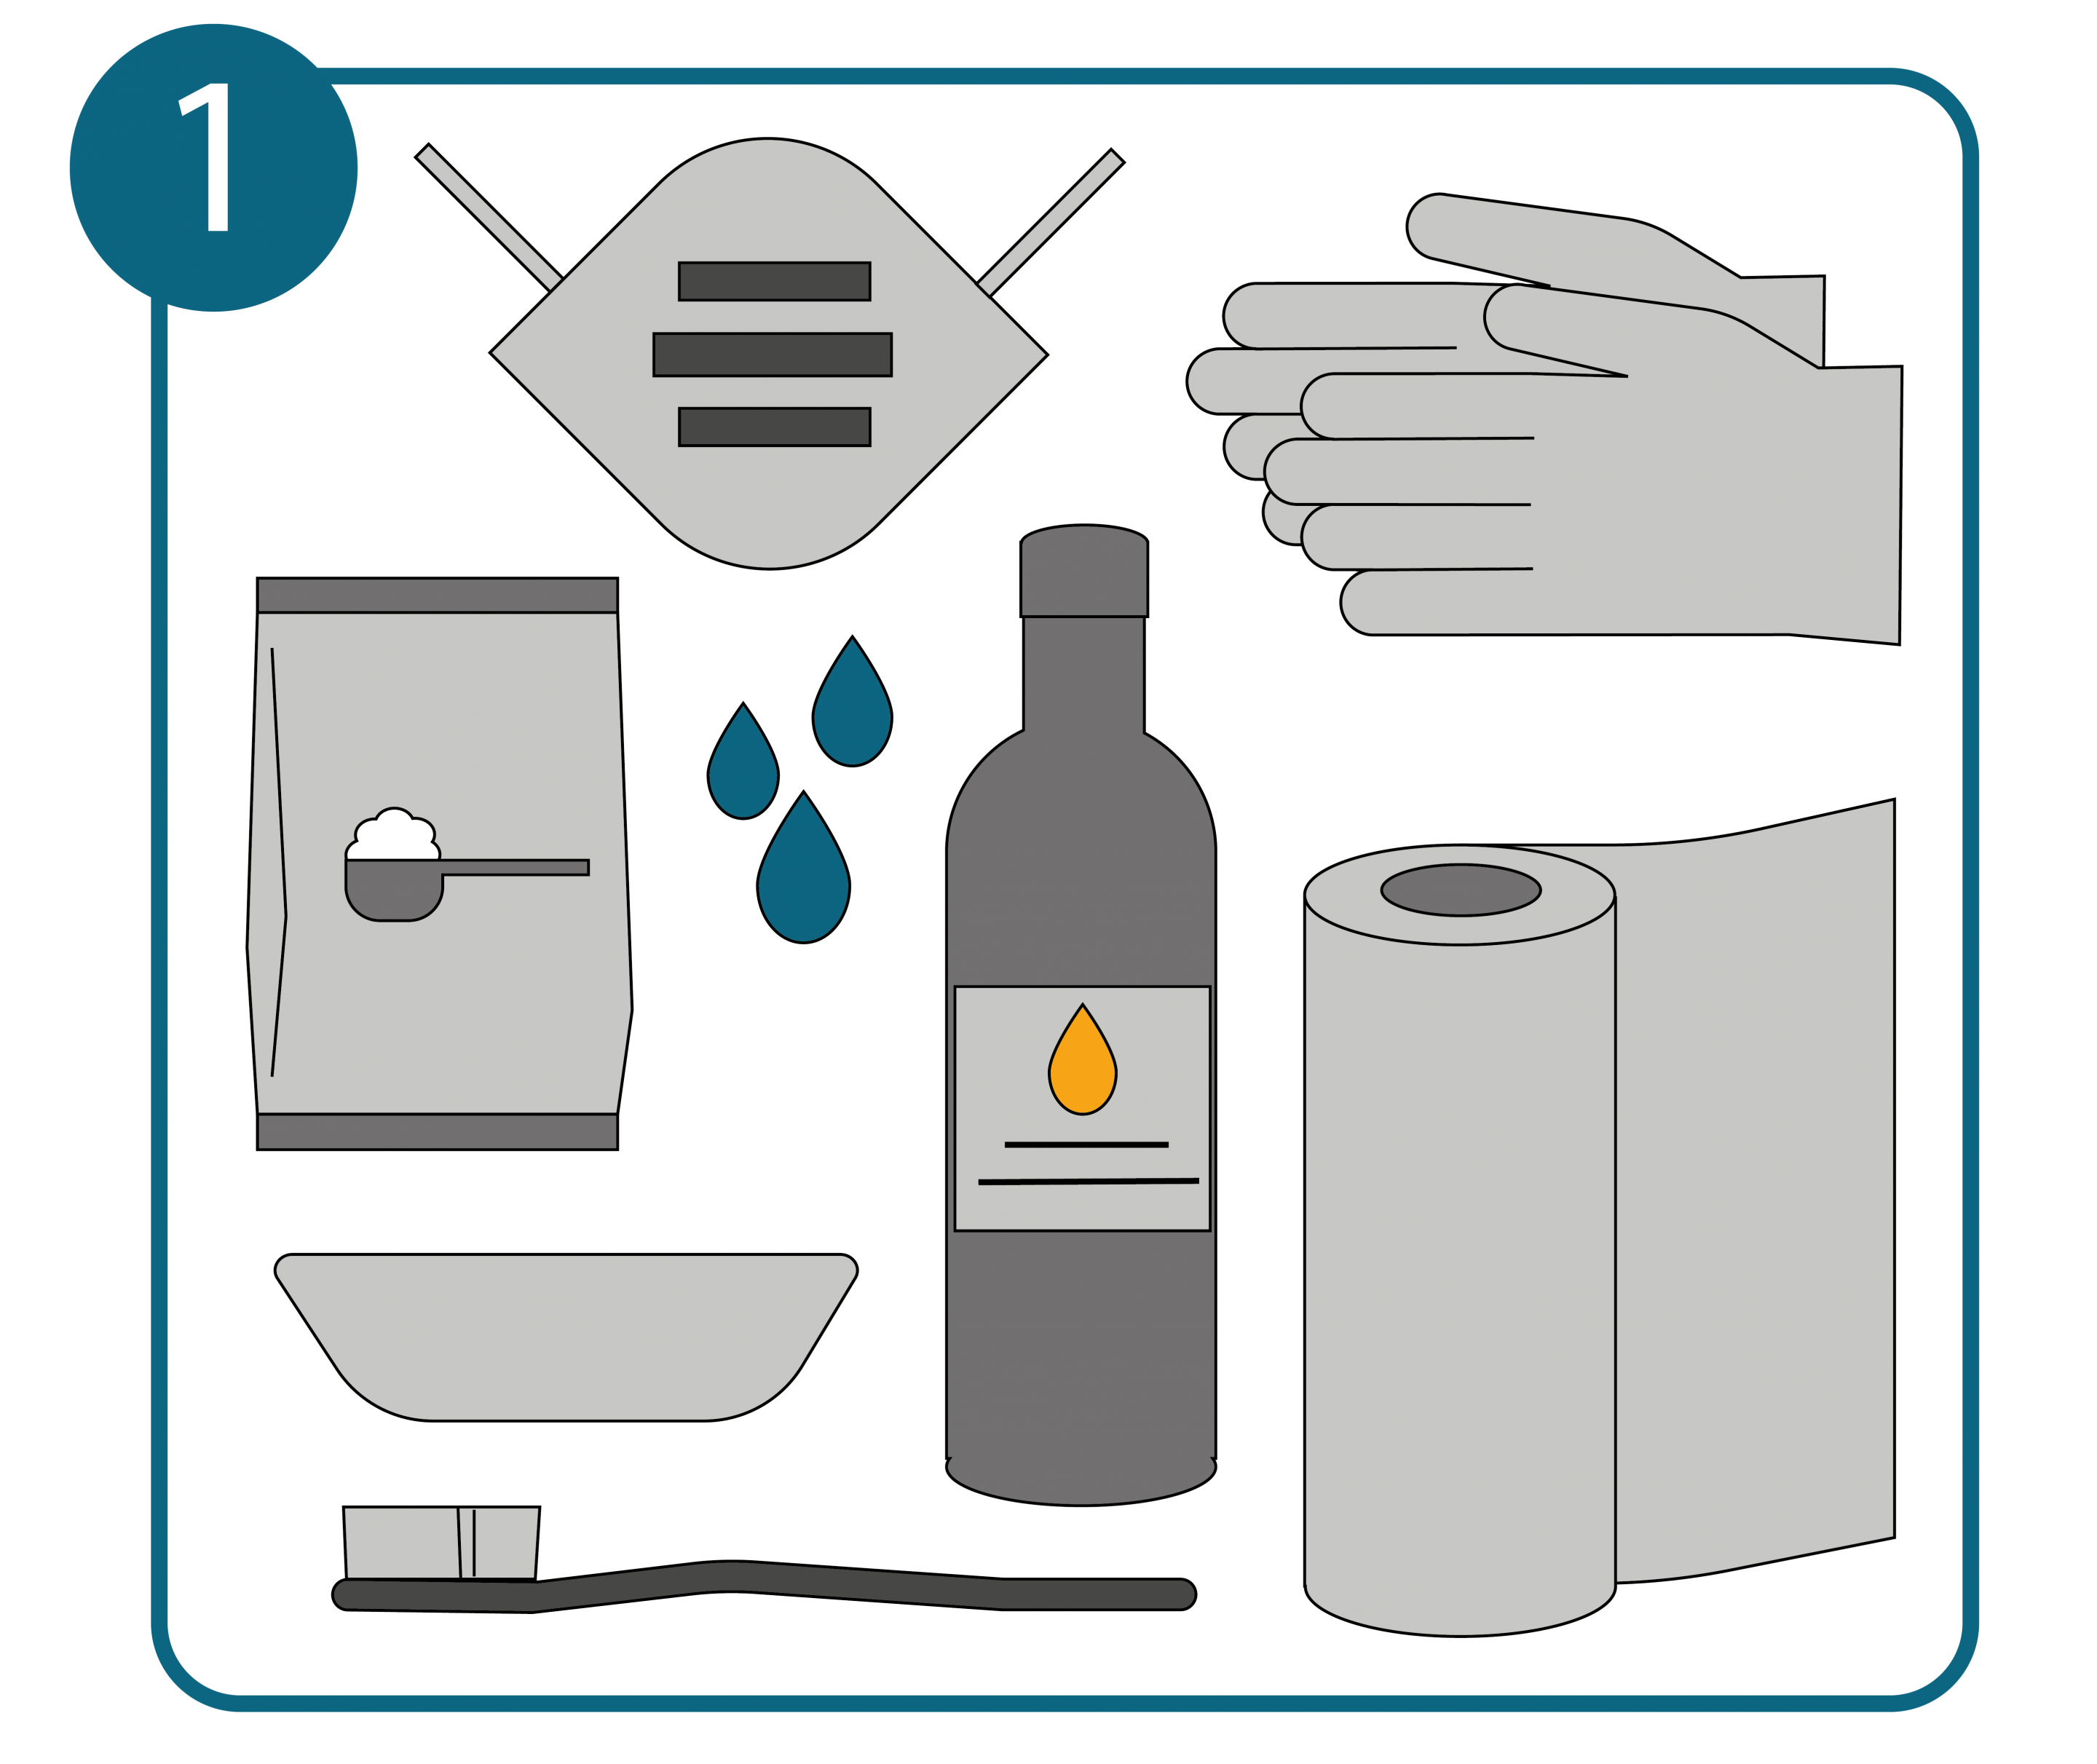 Silikonfugen reinigen Schritt 1: Utensilien und Reinigungsmittel zurechtlegen